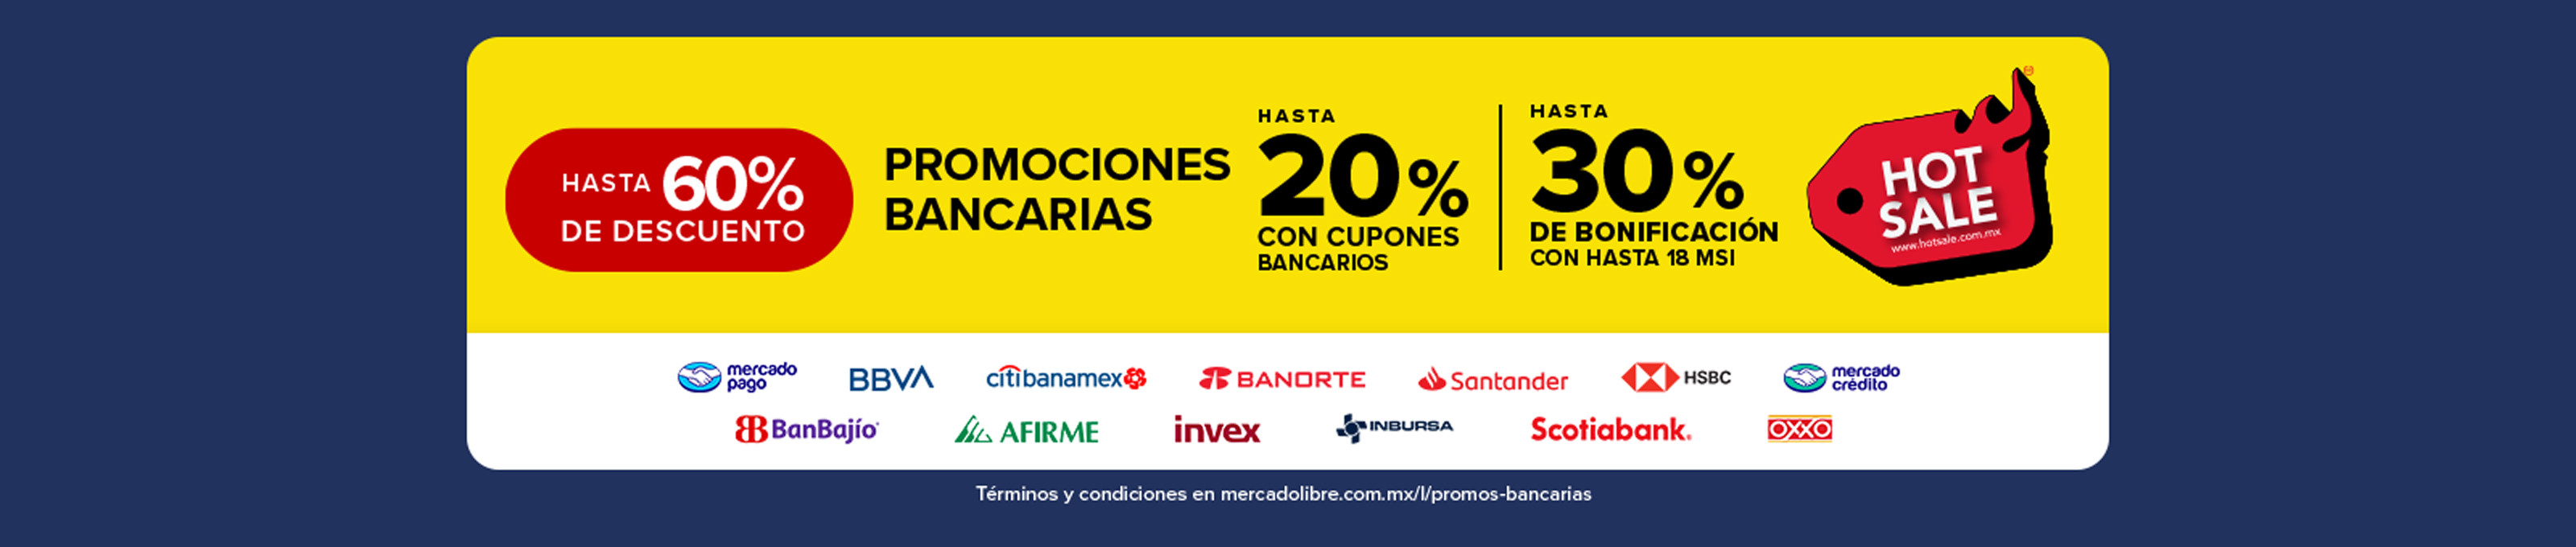 MS_Bancos